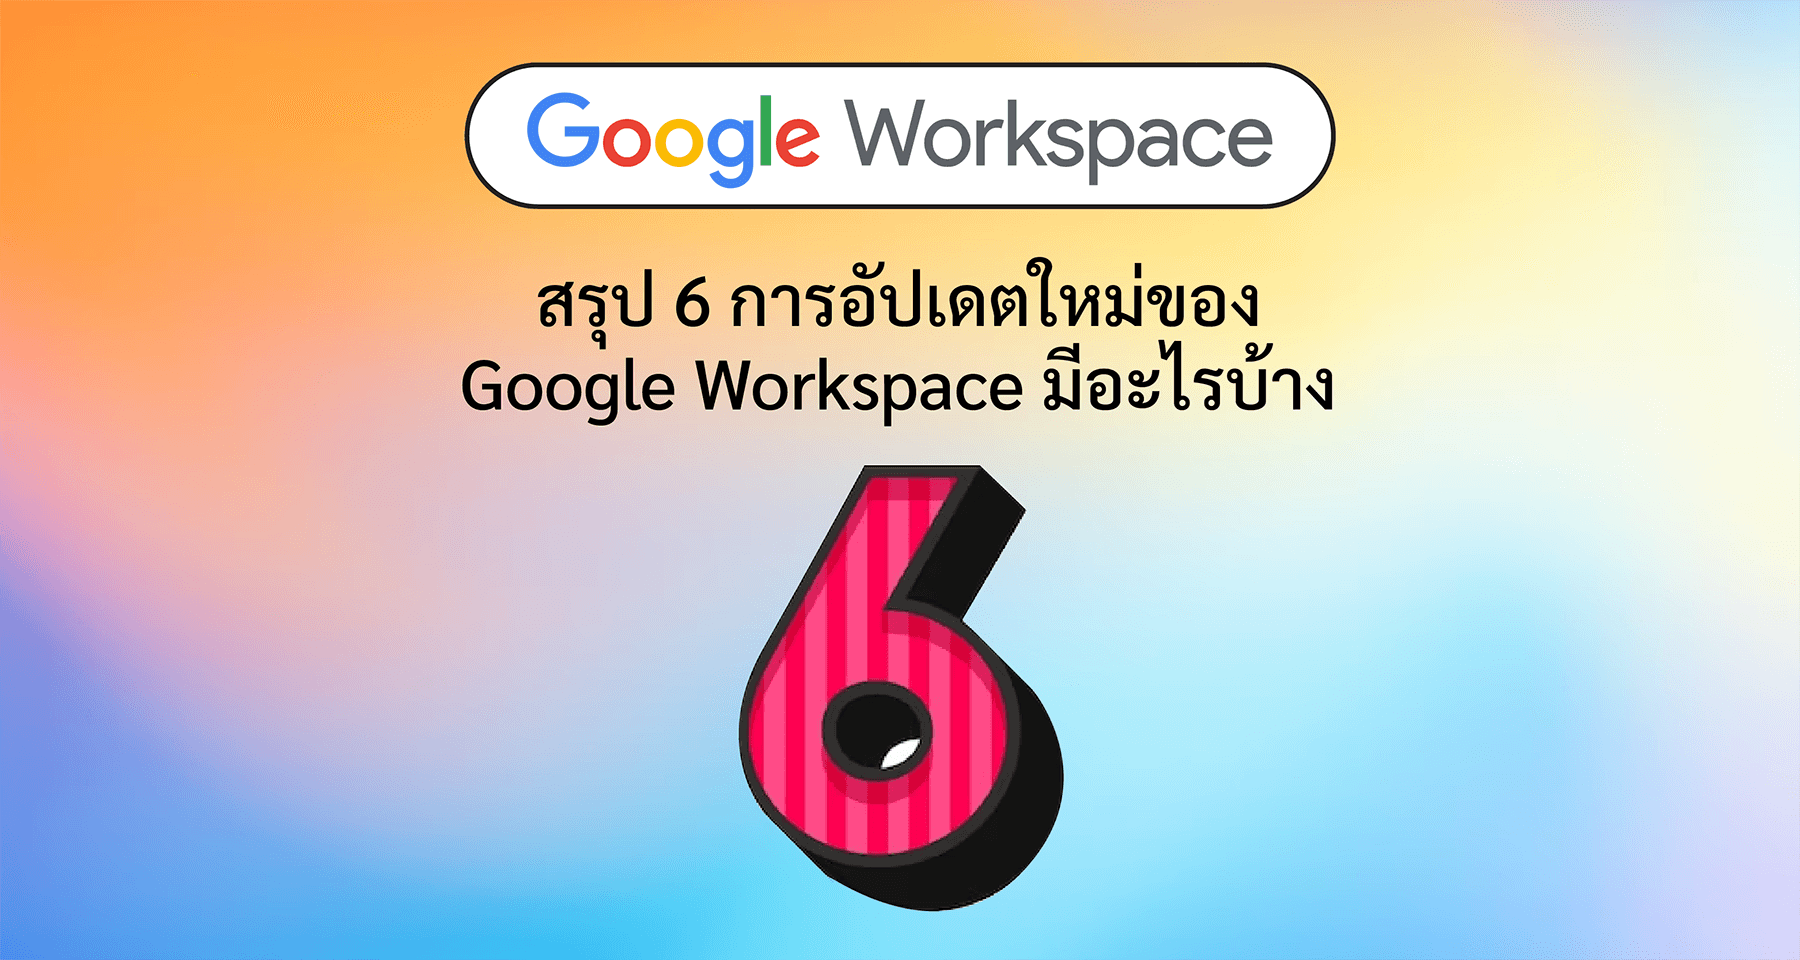 สรุป 6 การอัปเดตใหม่ของ Google Workspace มีอะไรบ้าง